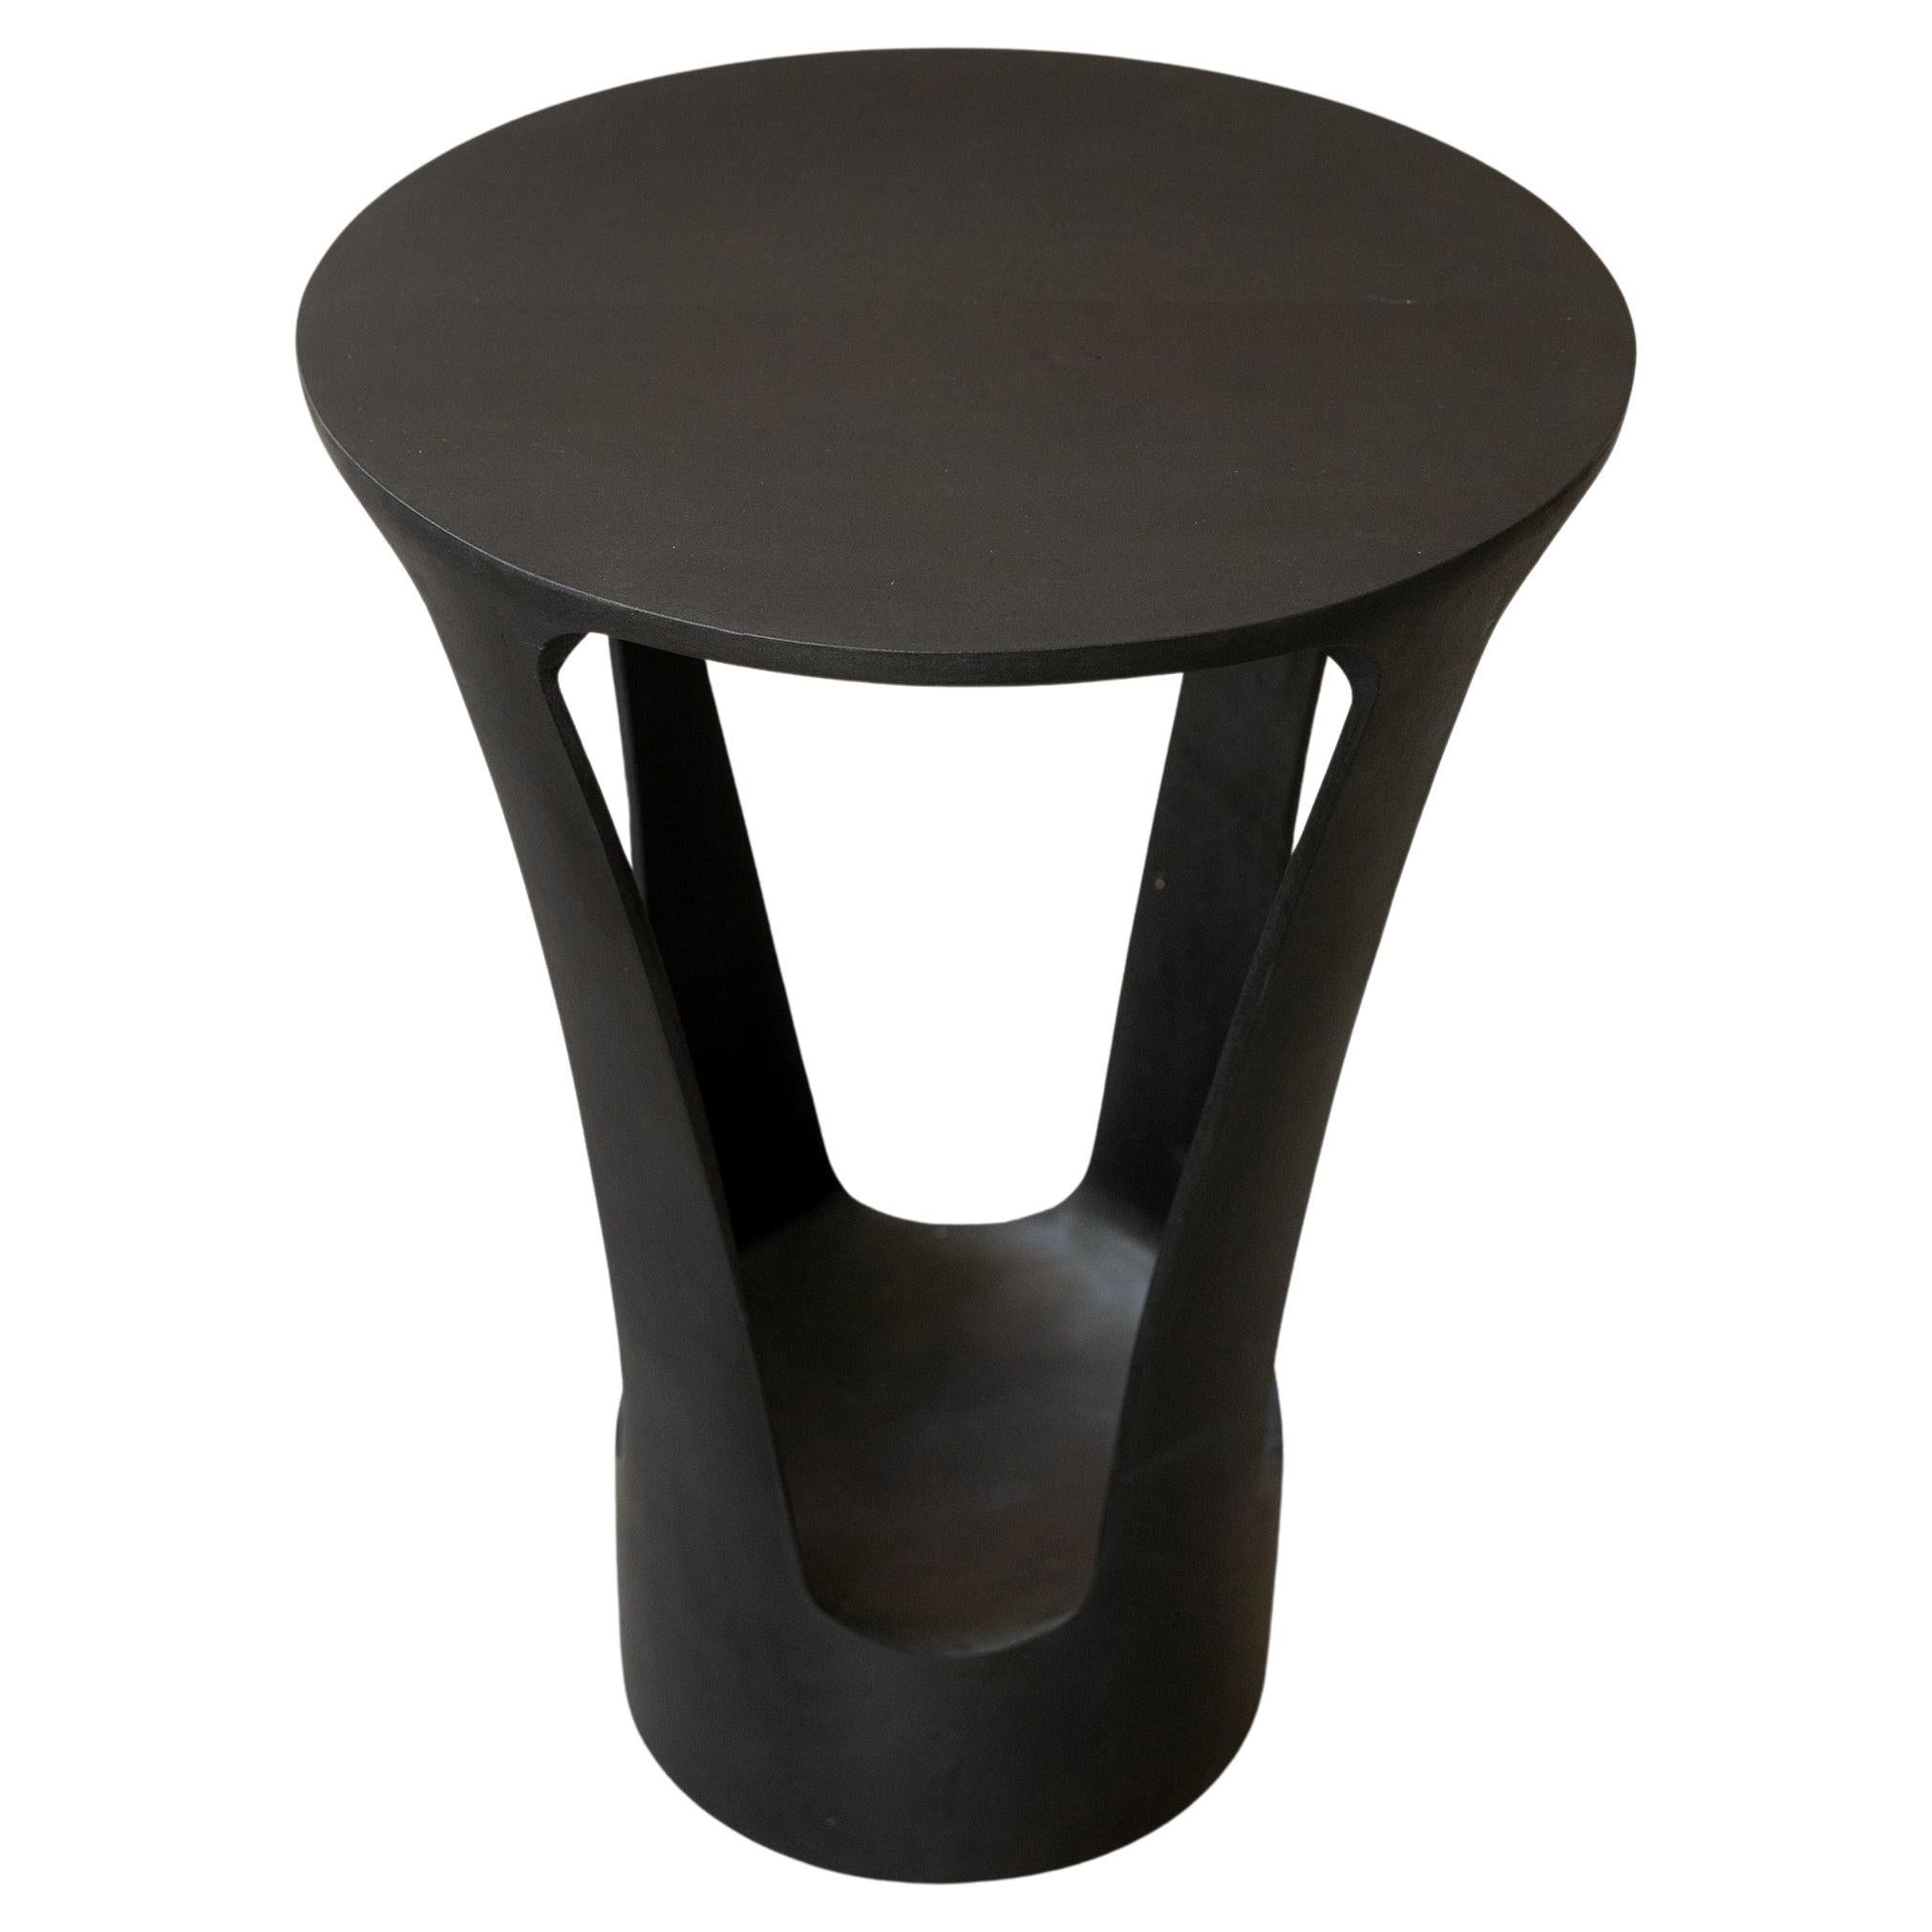 Pétiole Pedestal Table  For Sale